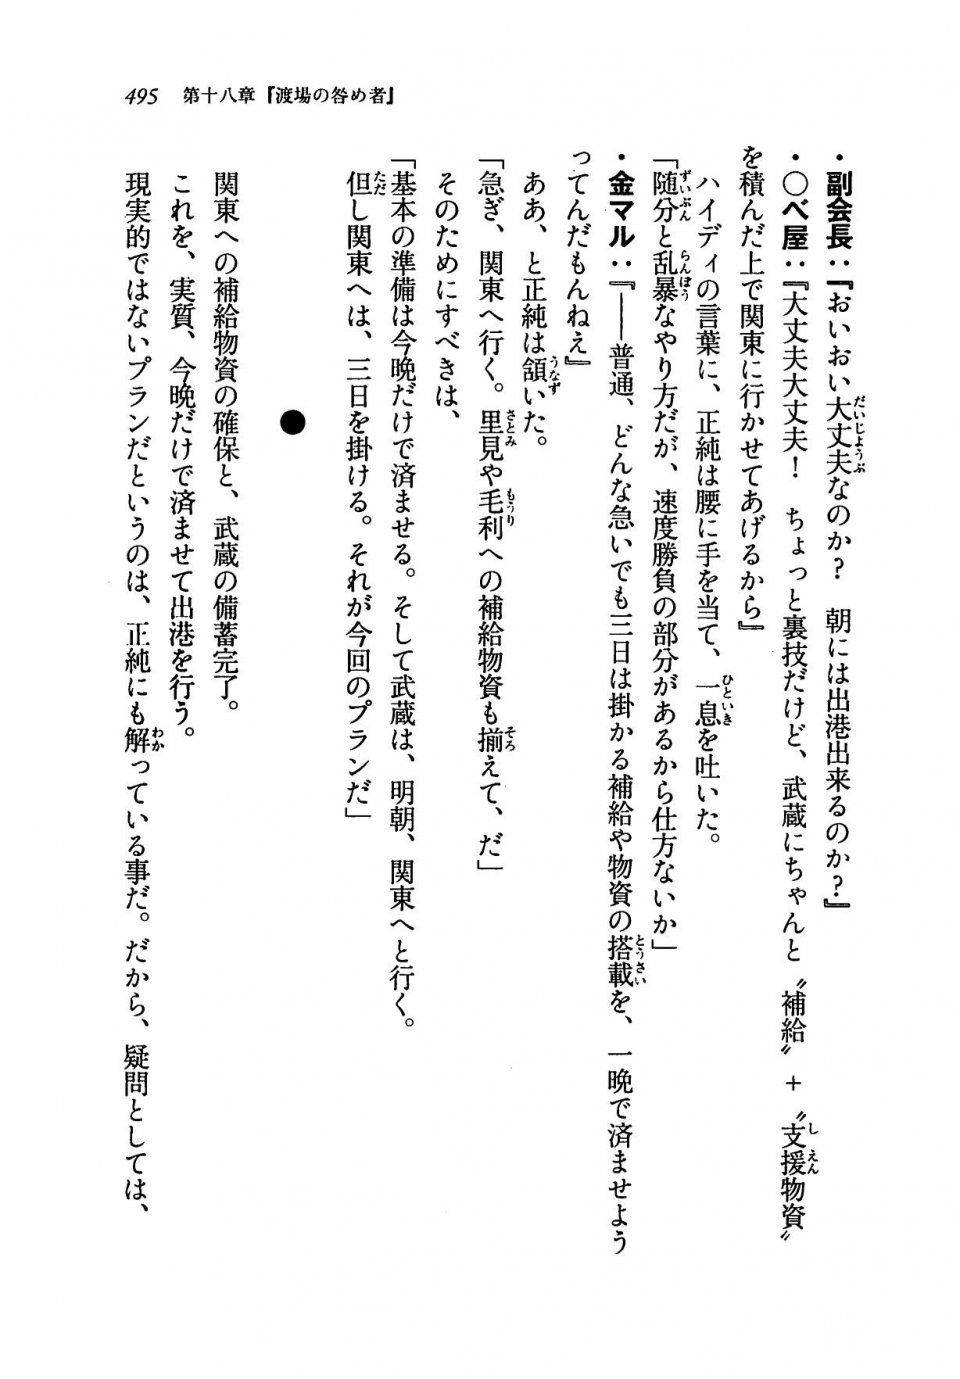 Kyoukai Senjou no Horizon LN Vol 19(8A) - Photo #495